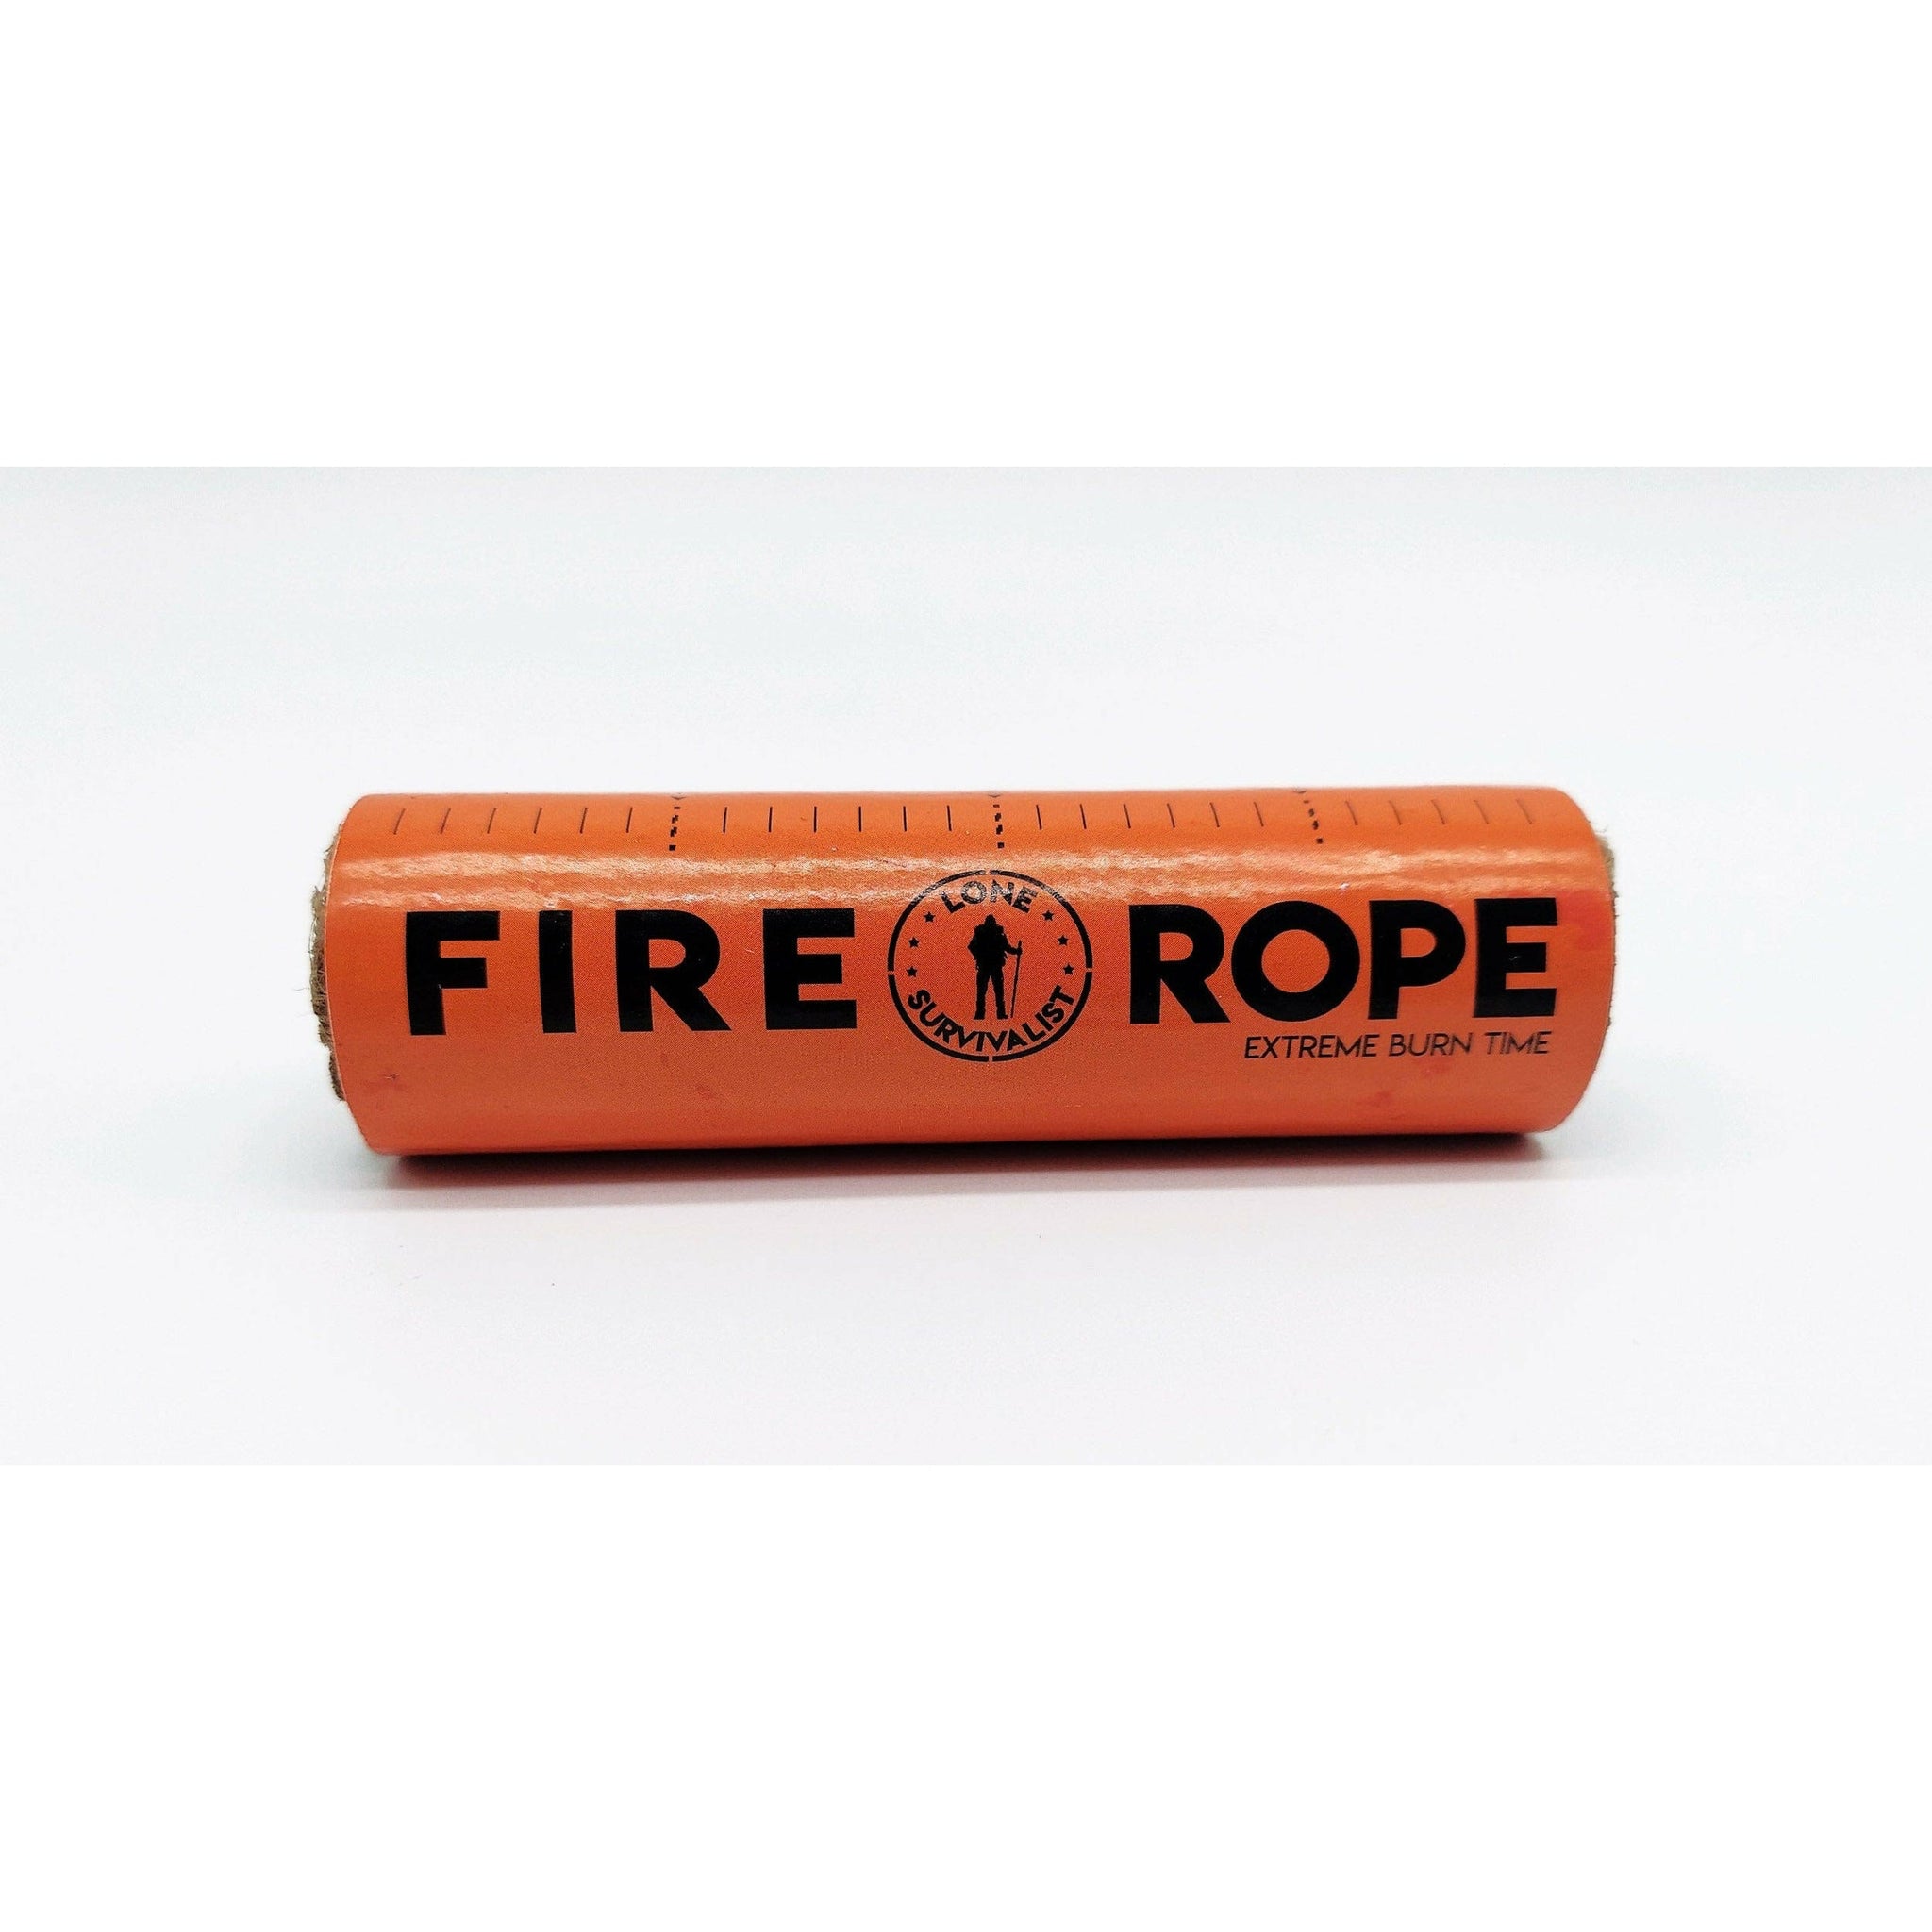 FIRE STARTER BUNDLE Zippo Fire Fast Torch W Lone Survivalist 4" Fire Rope